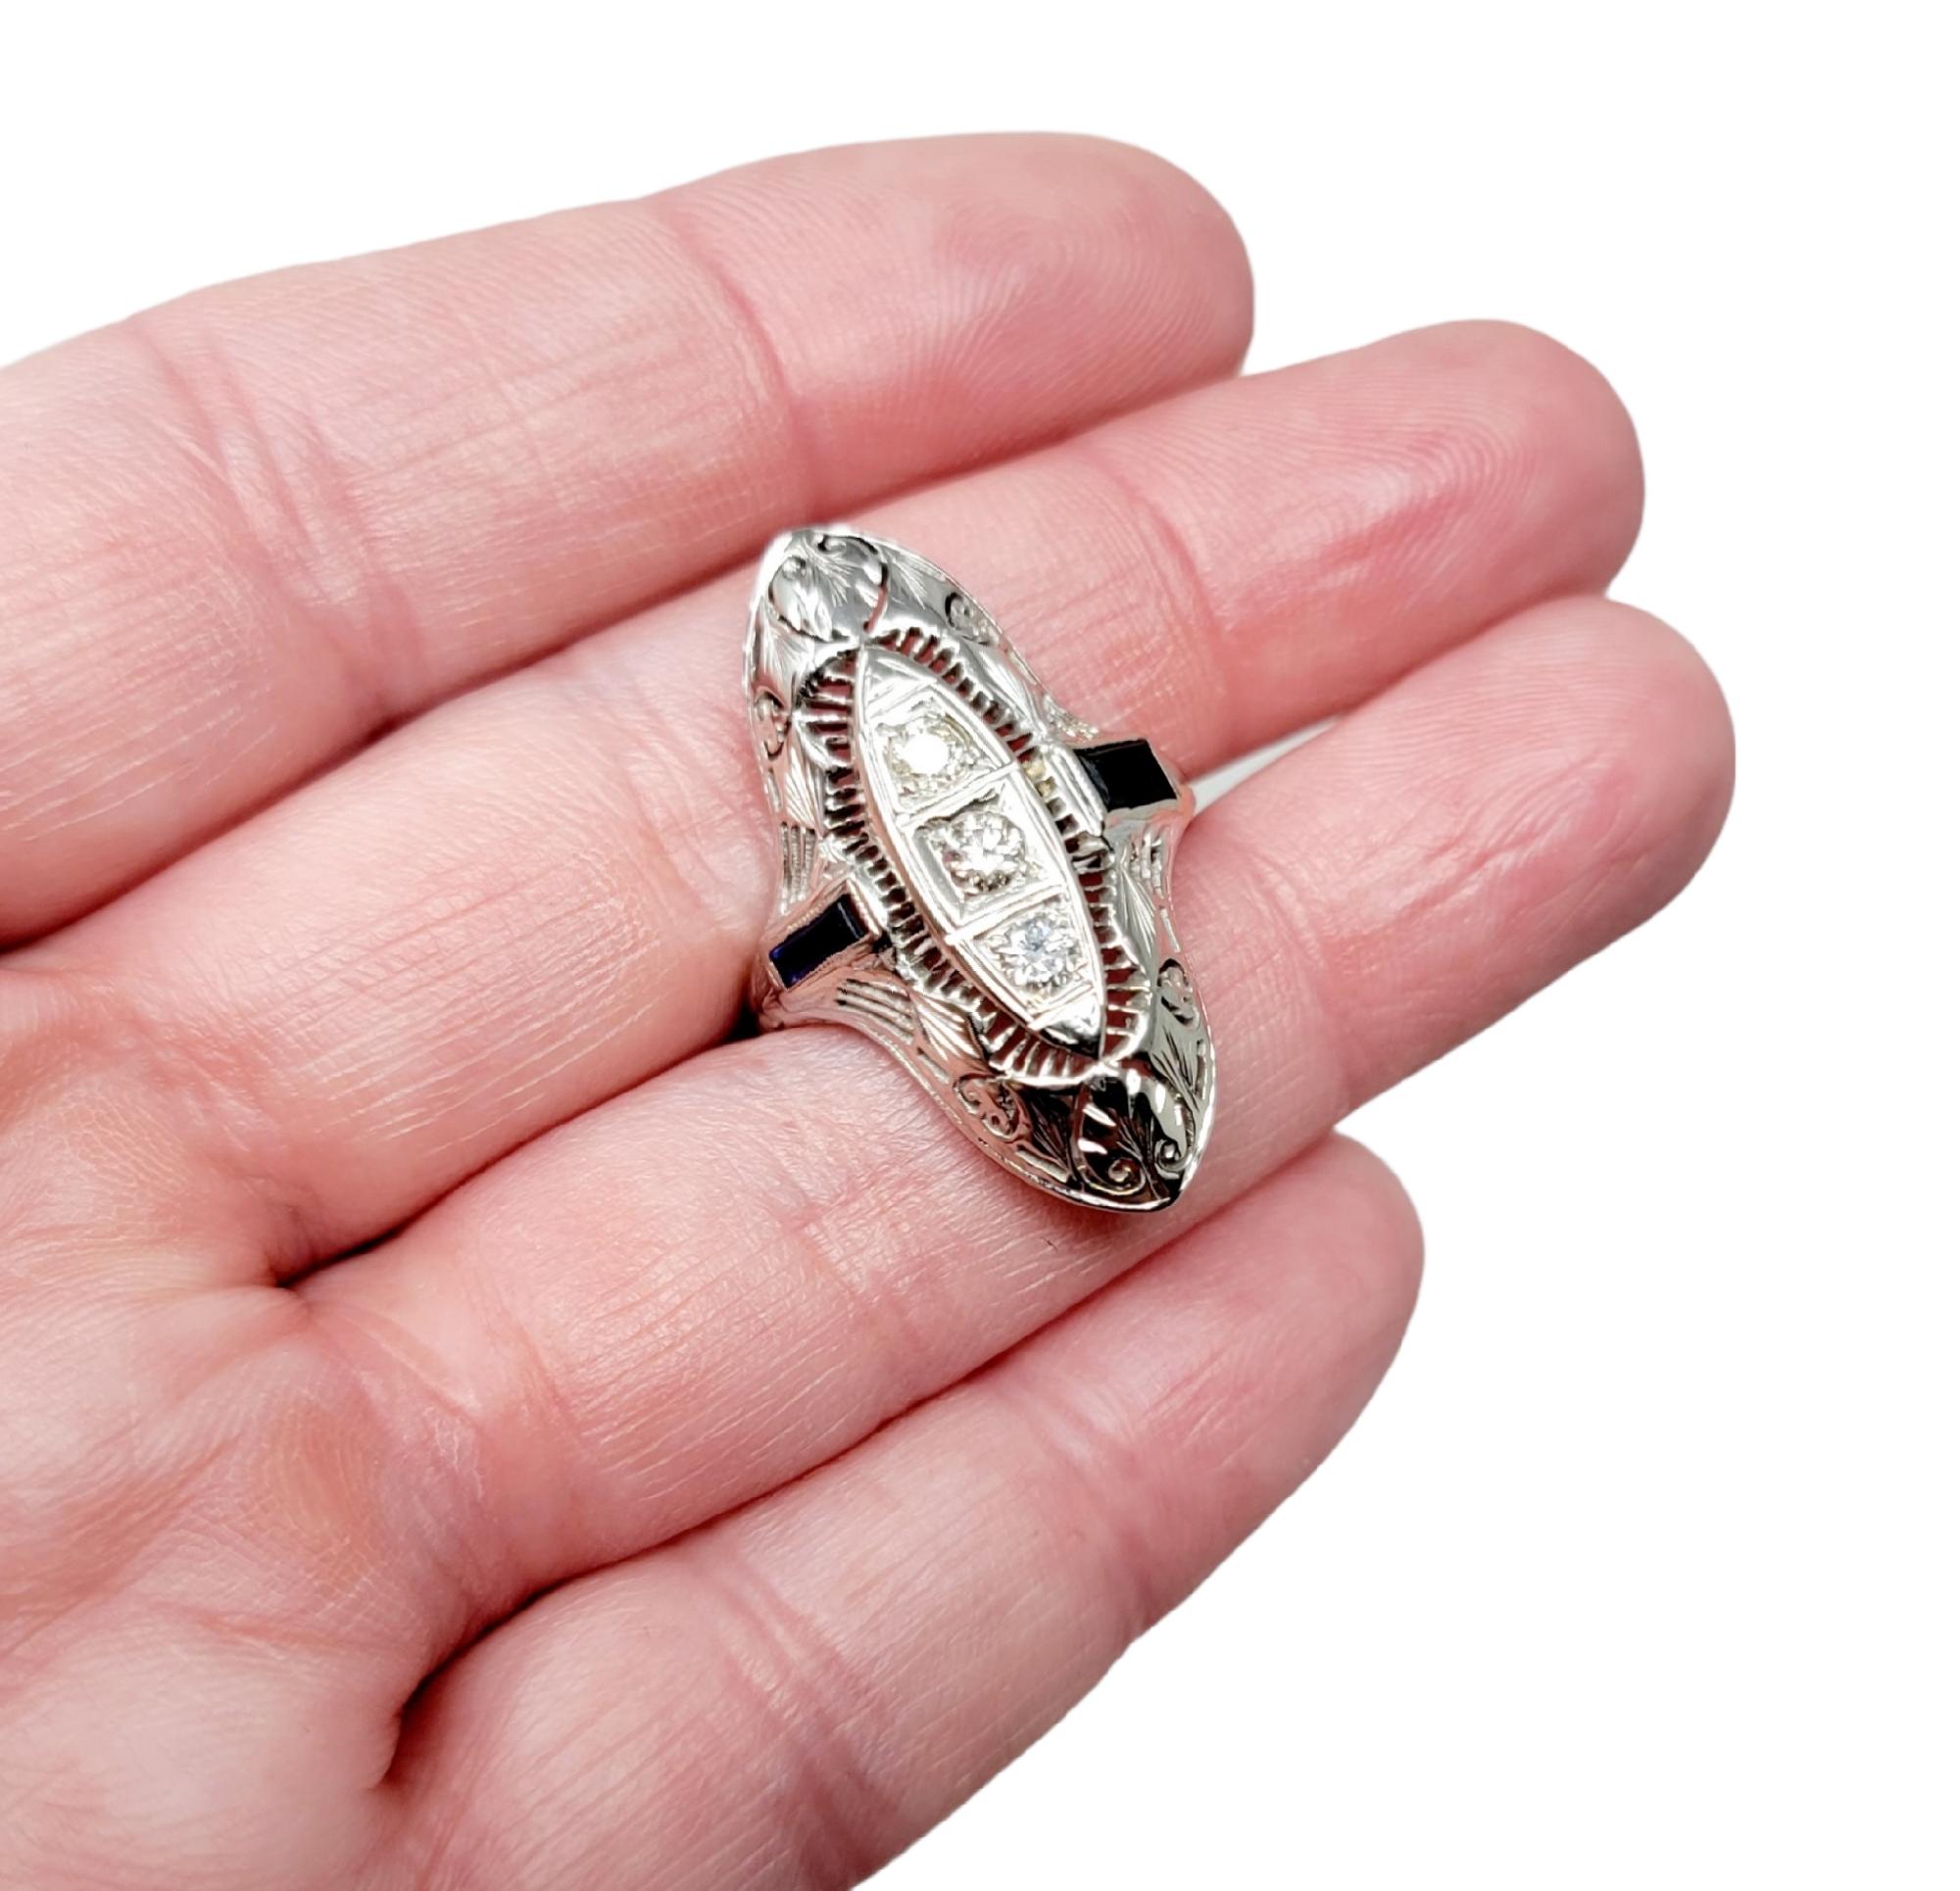 Taille de l'anneau : 6

Magnifique bague vintage en diamant et saphir avec des détails complexes et un sens de l'élégance.  glamour. Cette magnifique pièce présente un seul diamant de taille brillant du début de l'ère moderne, serti dans une monture